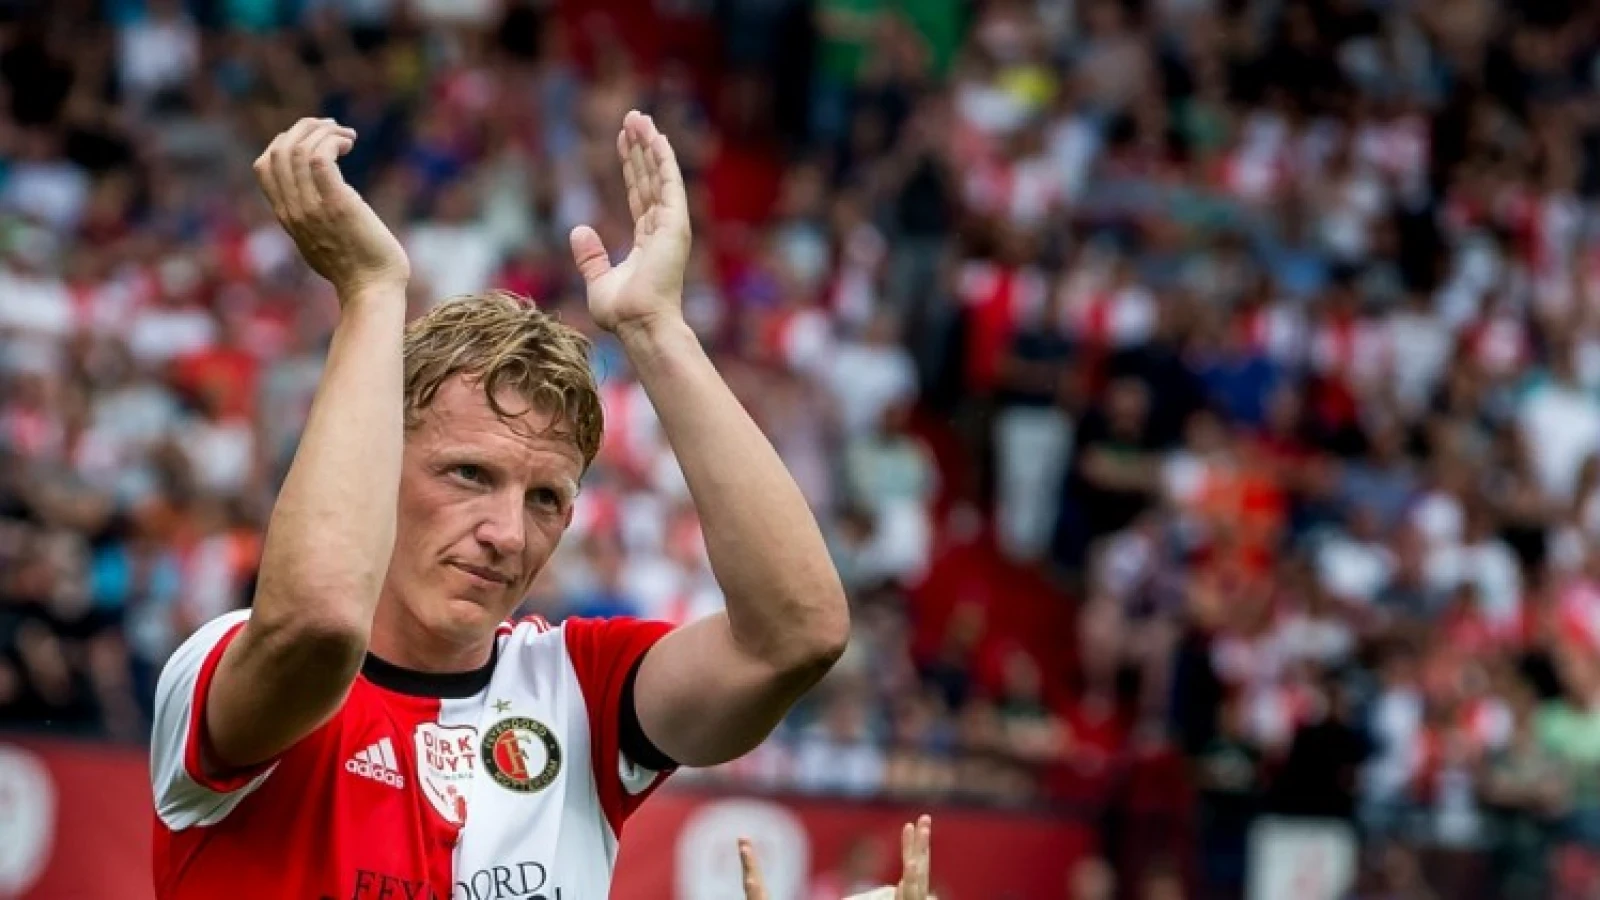 TERUGBLIK #3 | Feyenoord sluit seizoen af met vierde plaats, en Kuyt neemt afscheid